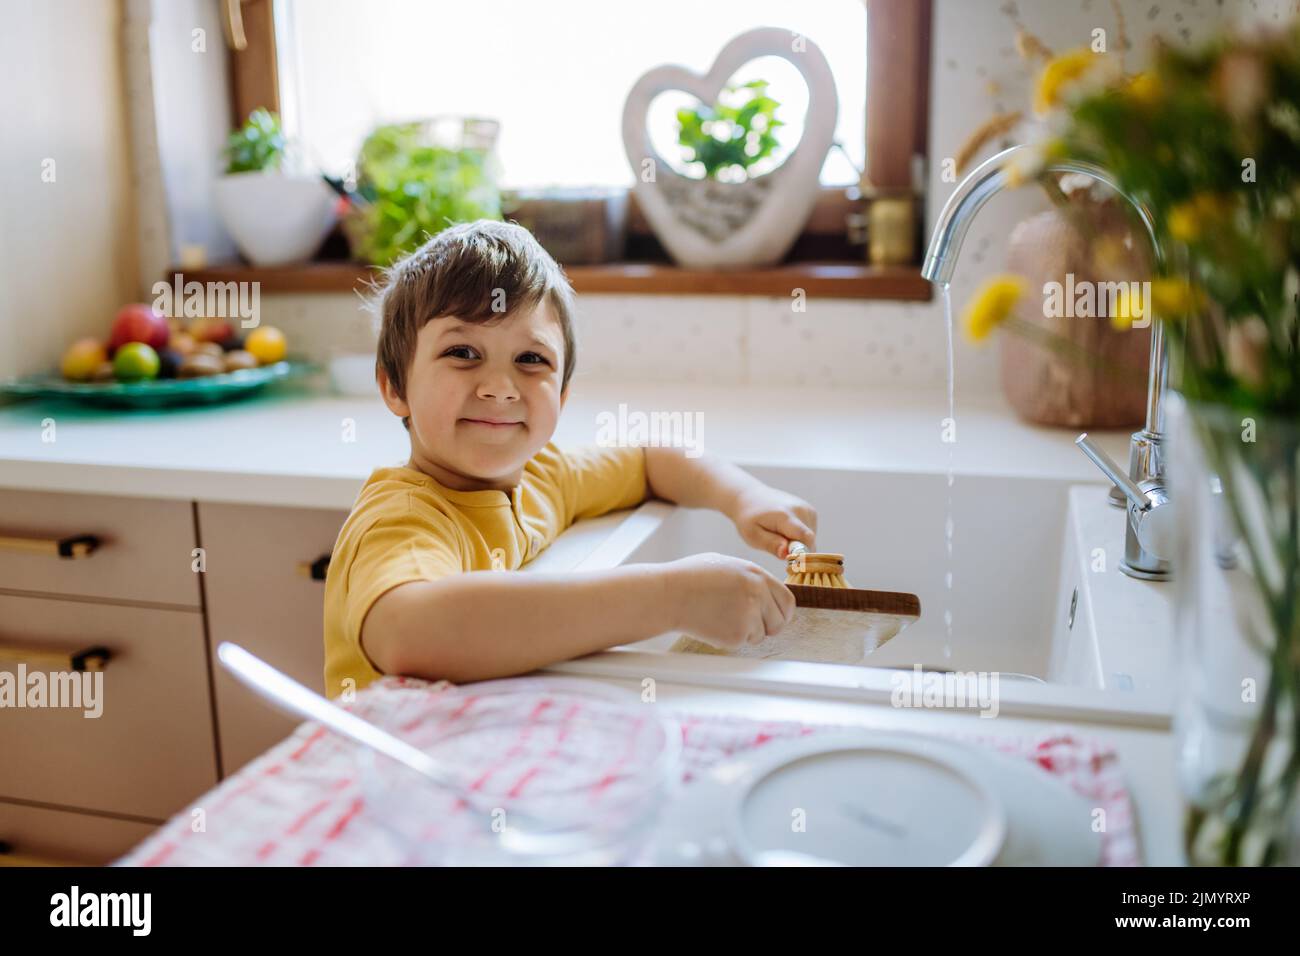 Un niño pequeño en un lavaplatos está tratando de sacar el lavaplatos del  lavaplatos.